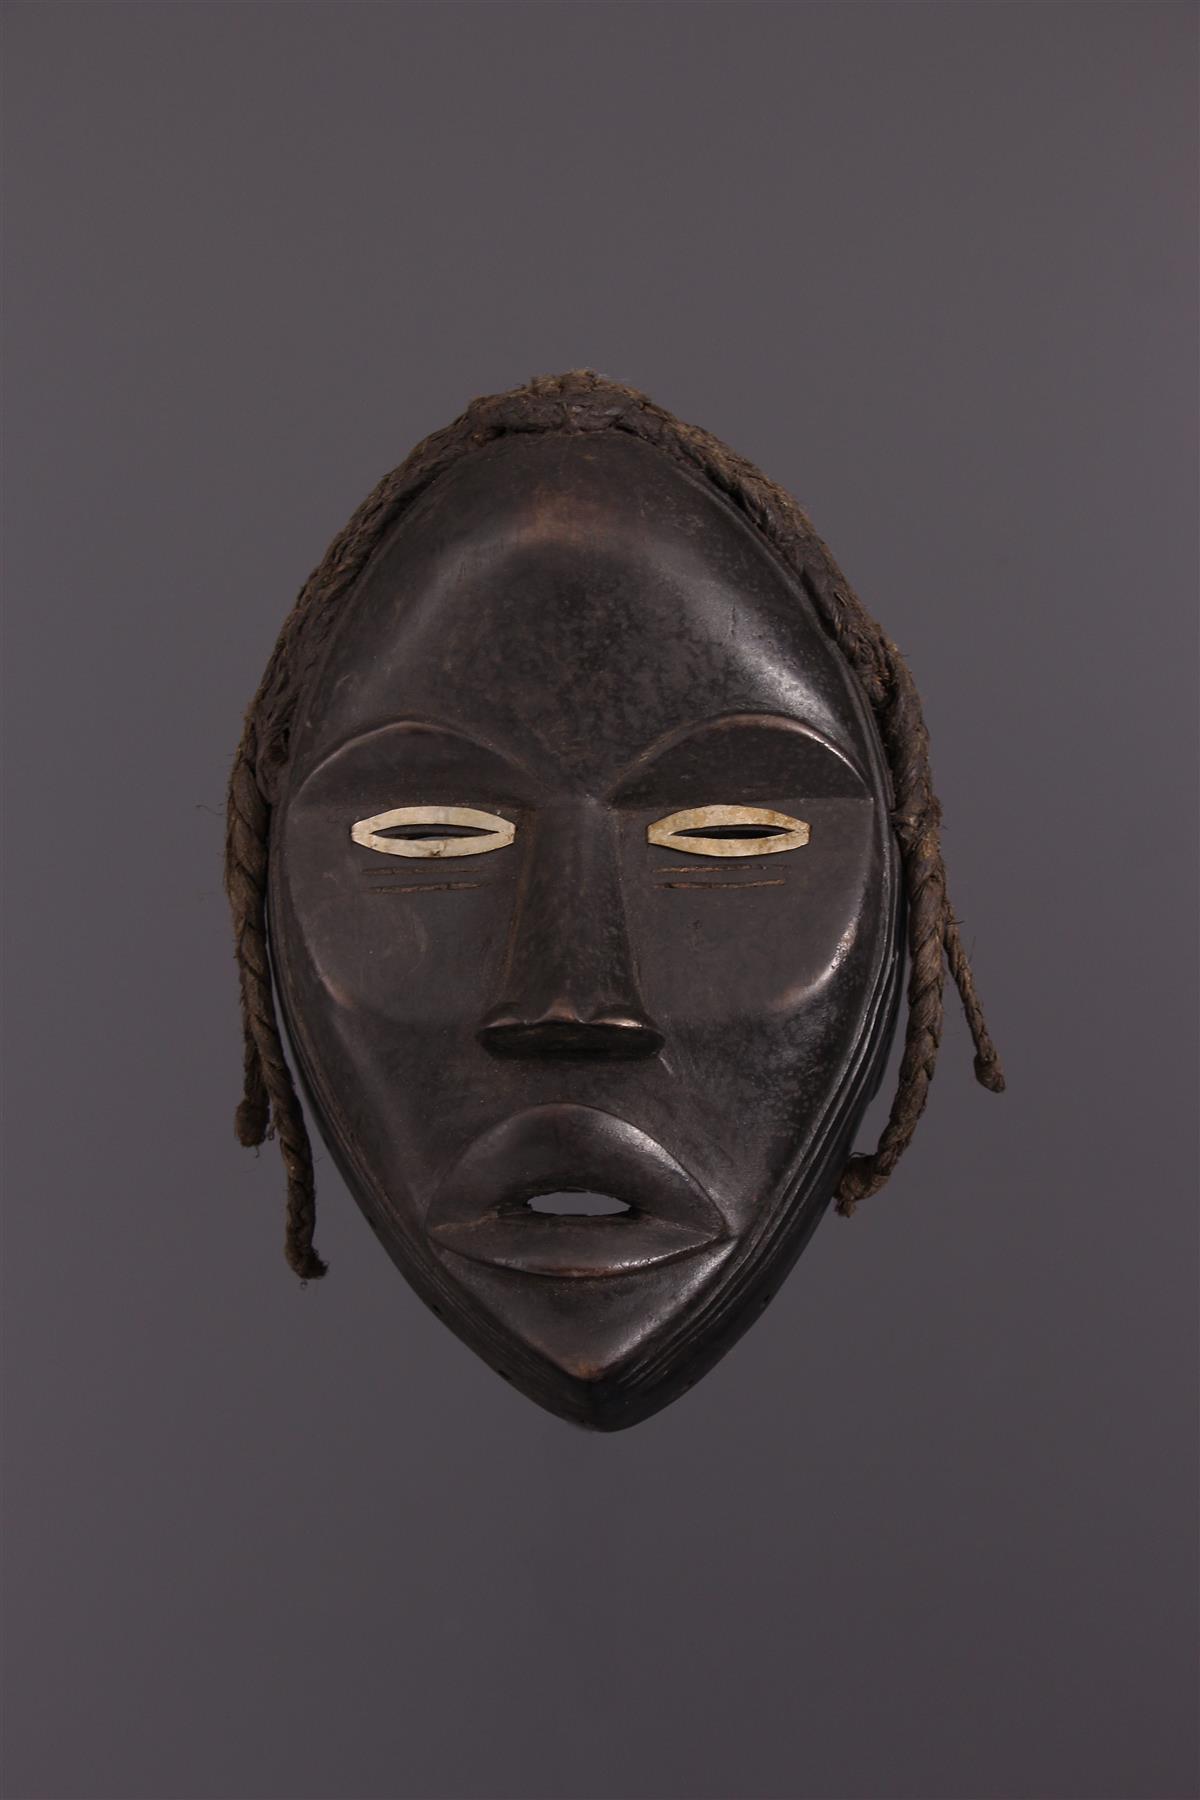 Dan Maschera - Arte africana